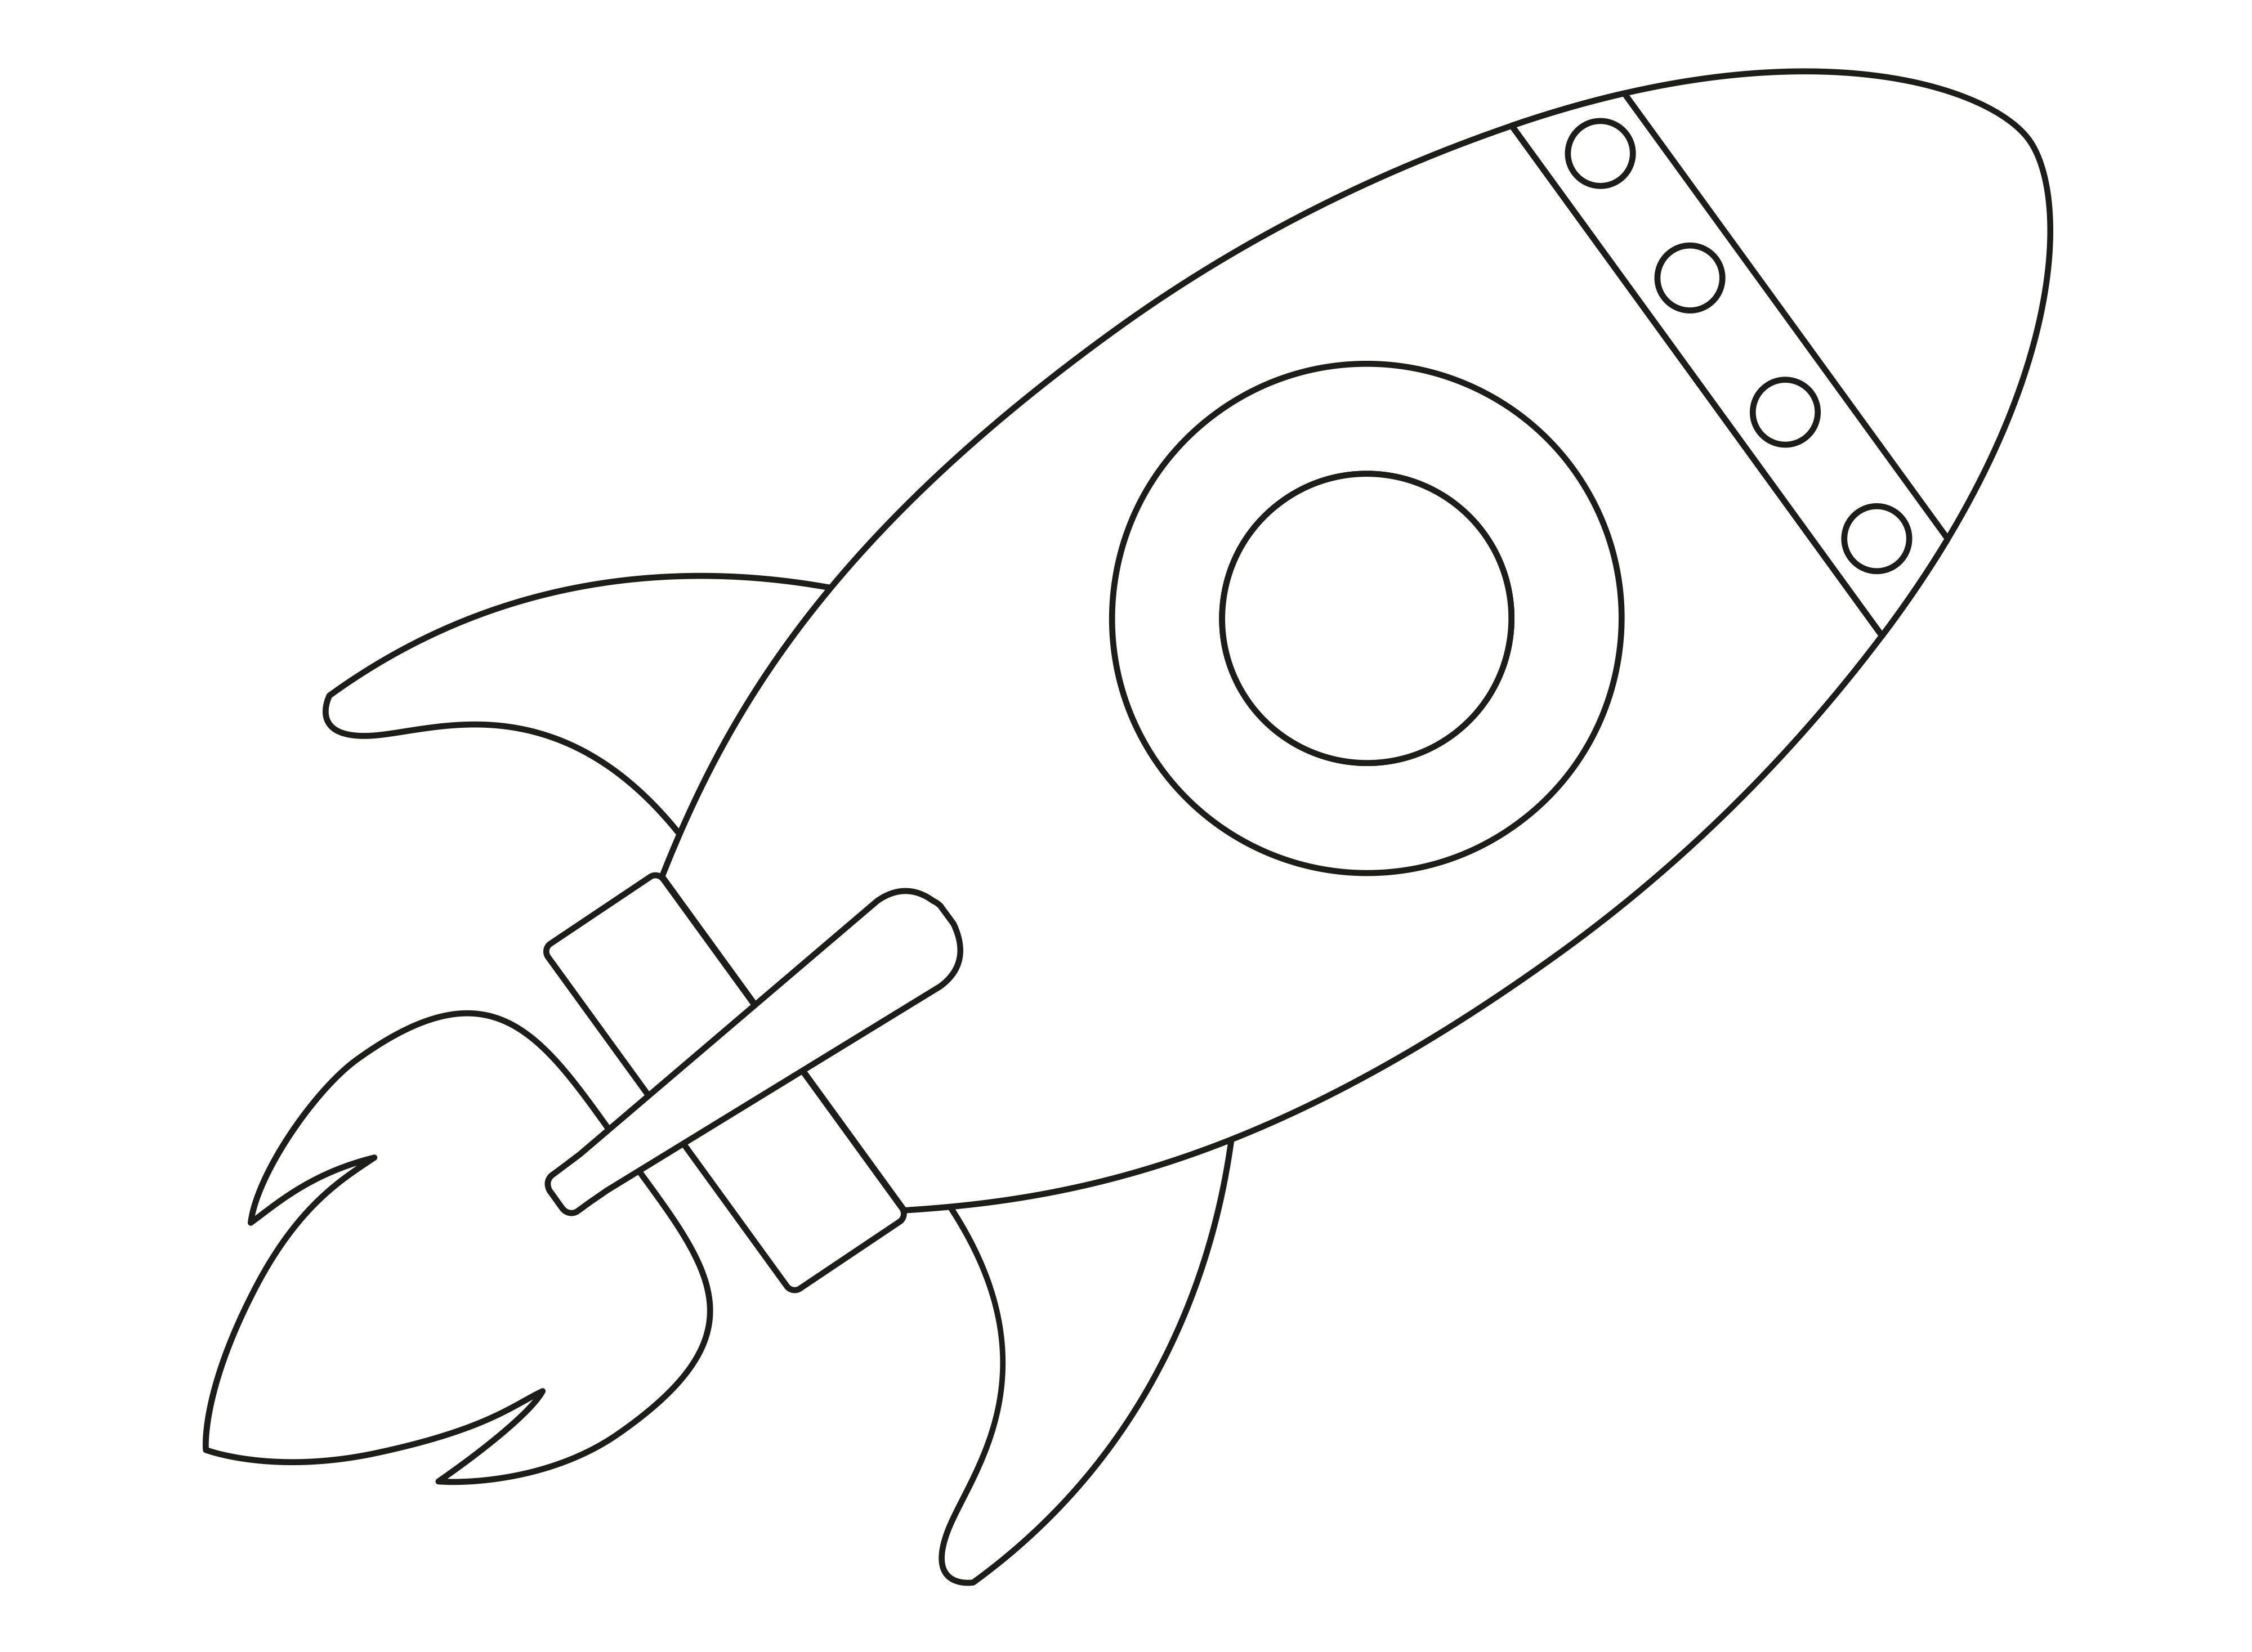 Раскраска игрушка космическая ракета с иллюминатором формата А4 в высоком качестве